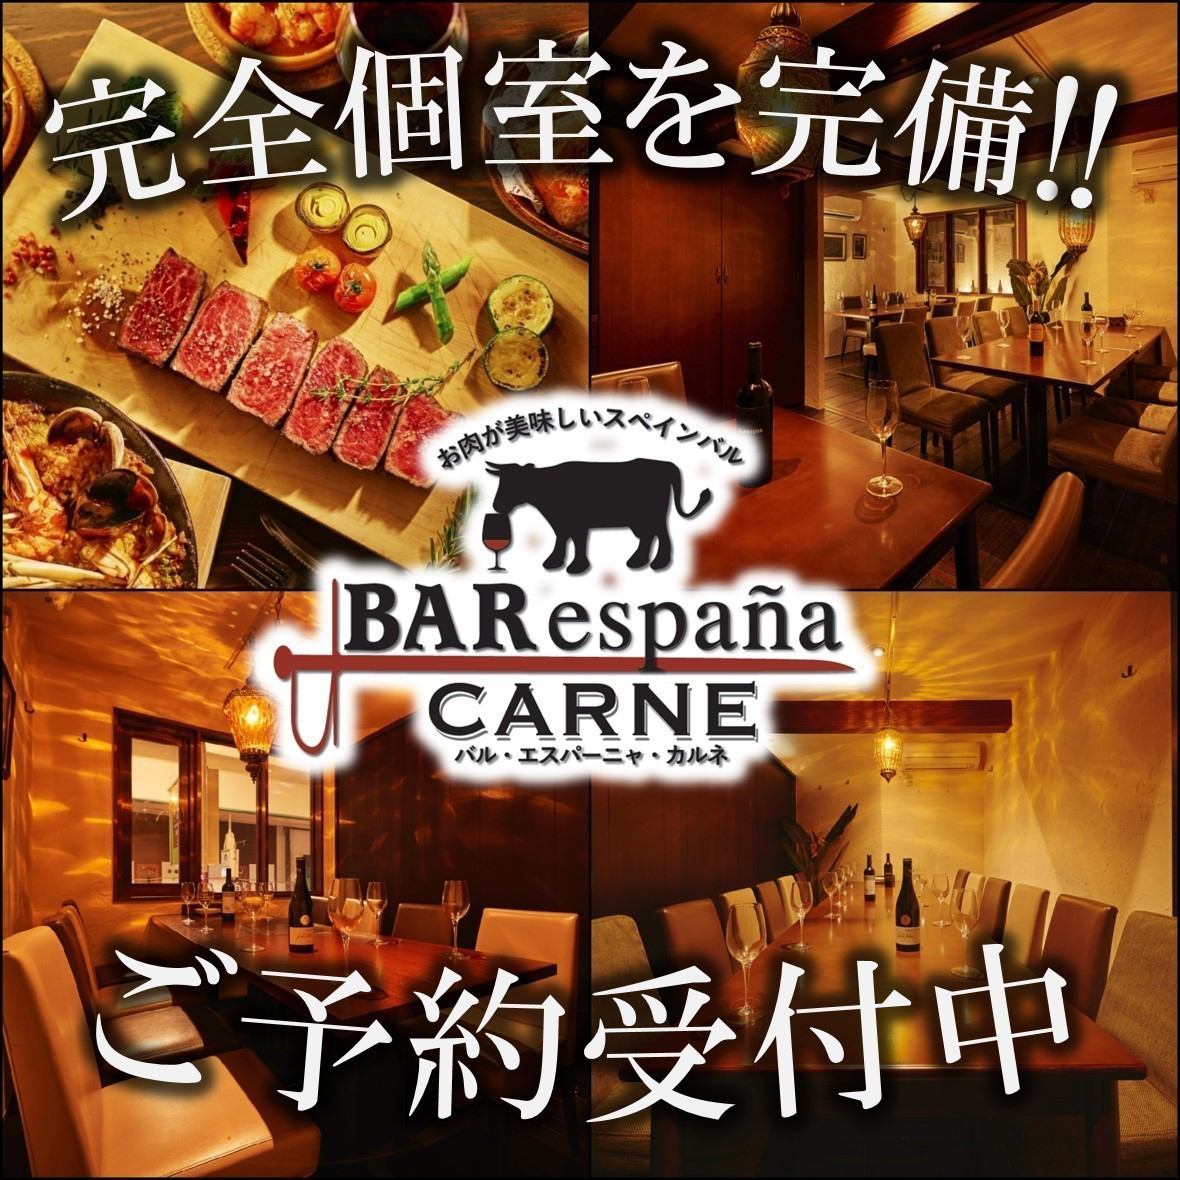 享用【日本第一海鲜饭】和【正宗炭烤牛排】♪ 拥有私人房间空间的正宗西班牙酒吧